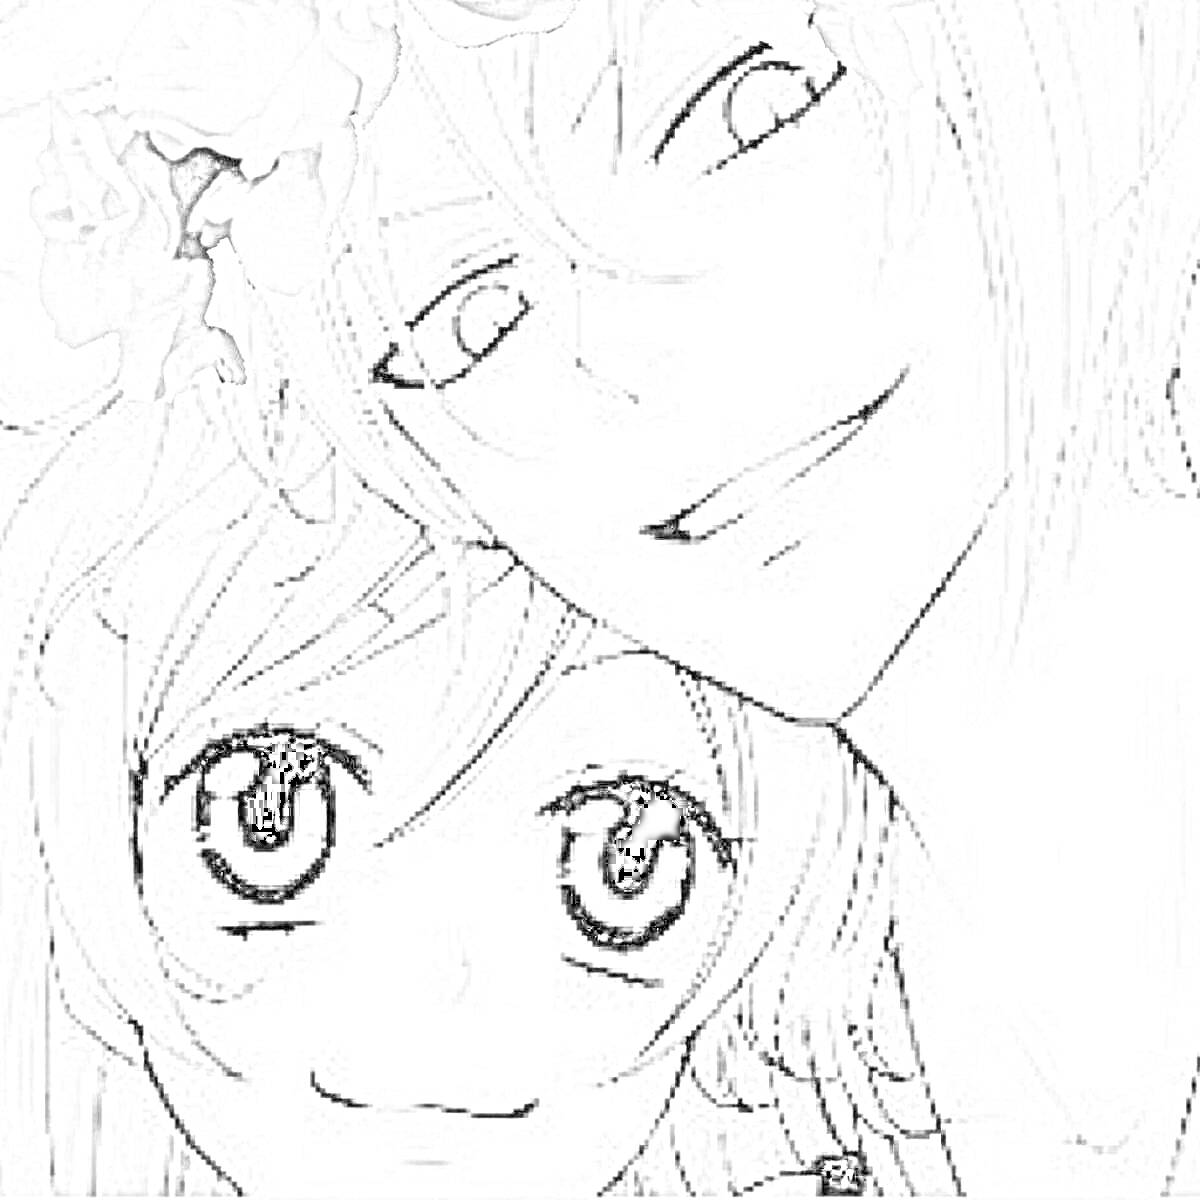 Раскраска Два персонажа из аниме, улыбающиеся, с венком из цветов на голове у одного из них